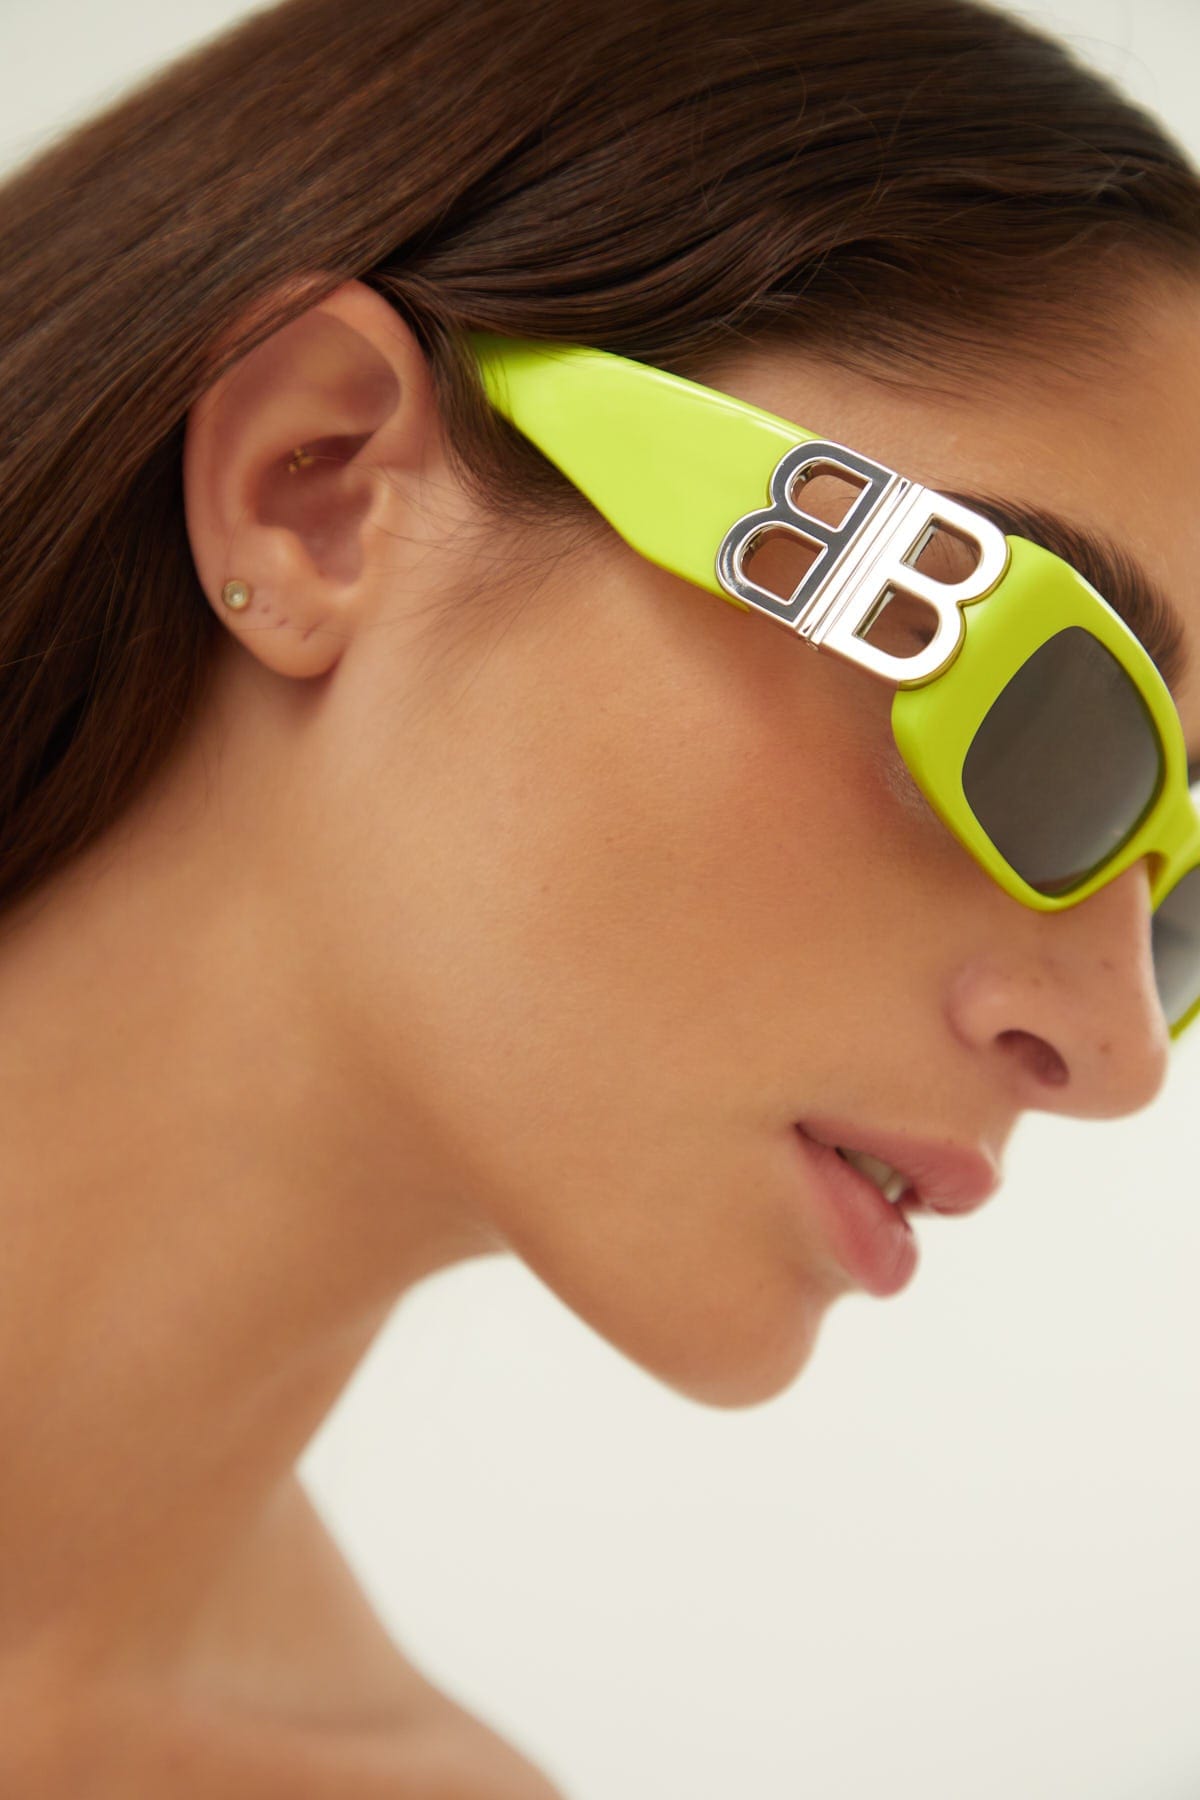 Balenciaga Dynasty micro fluor sunglasses featuring BB logo - Eyewear Club